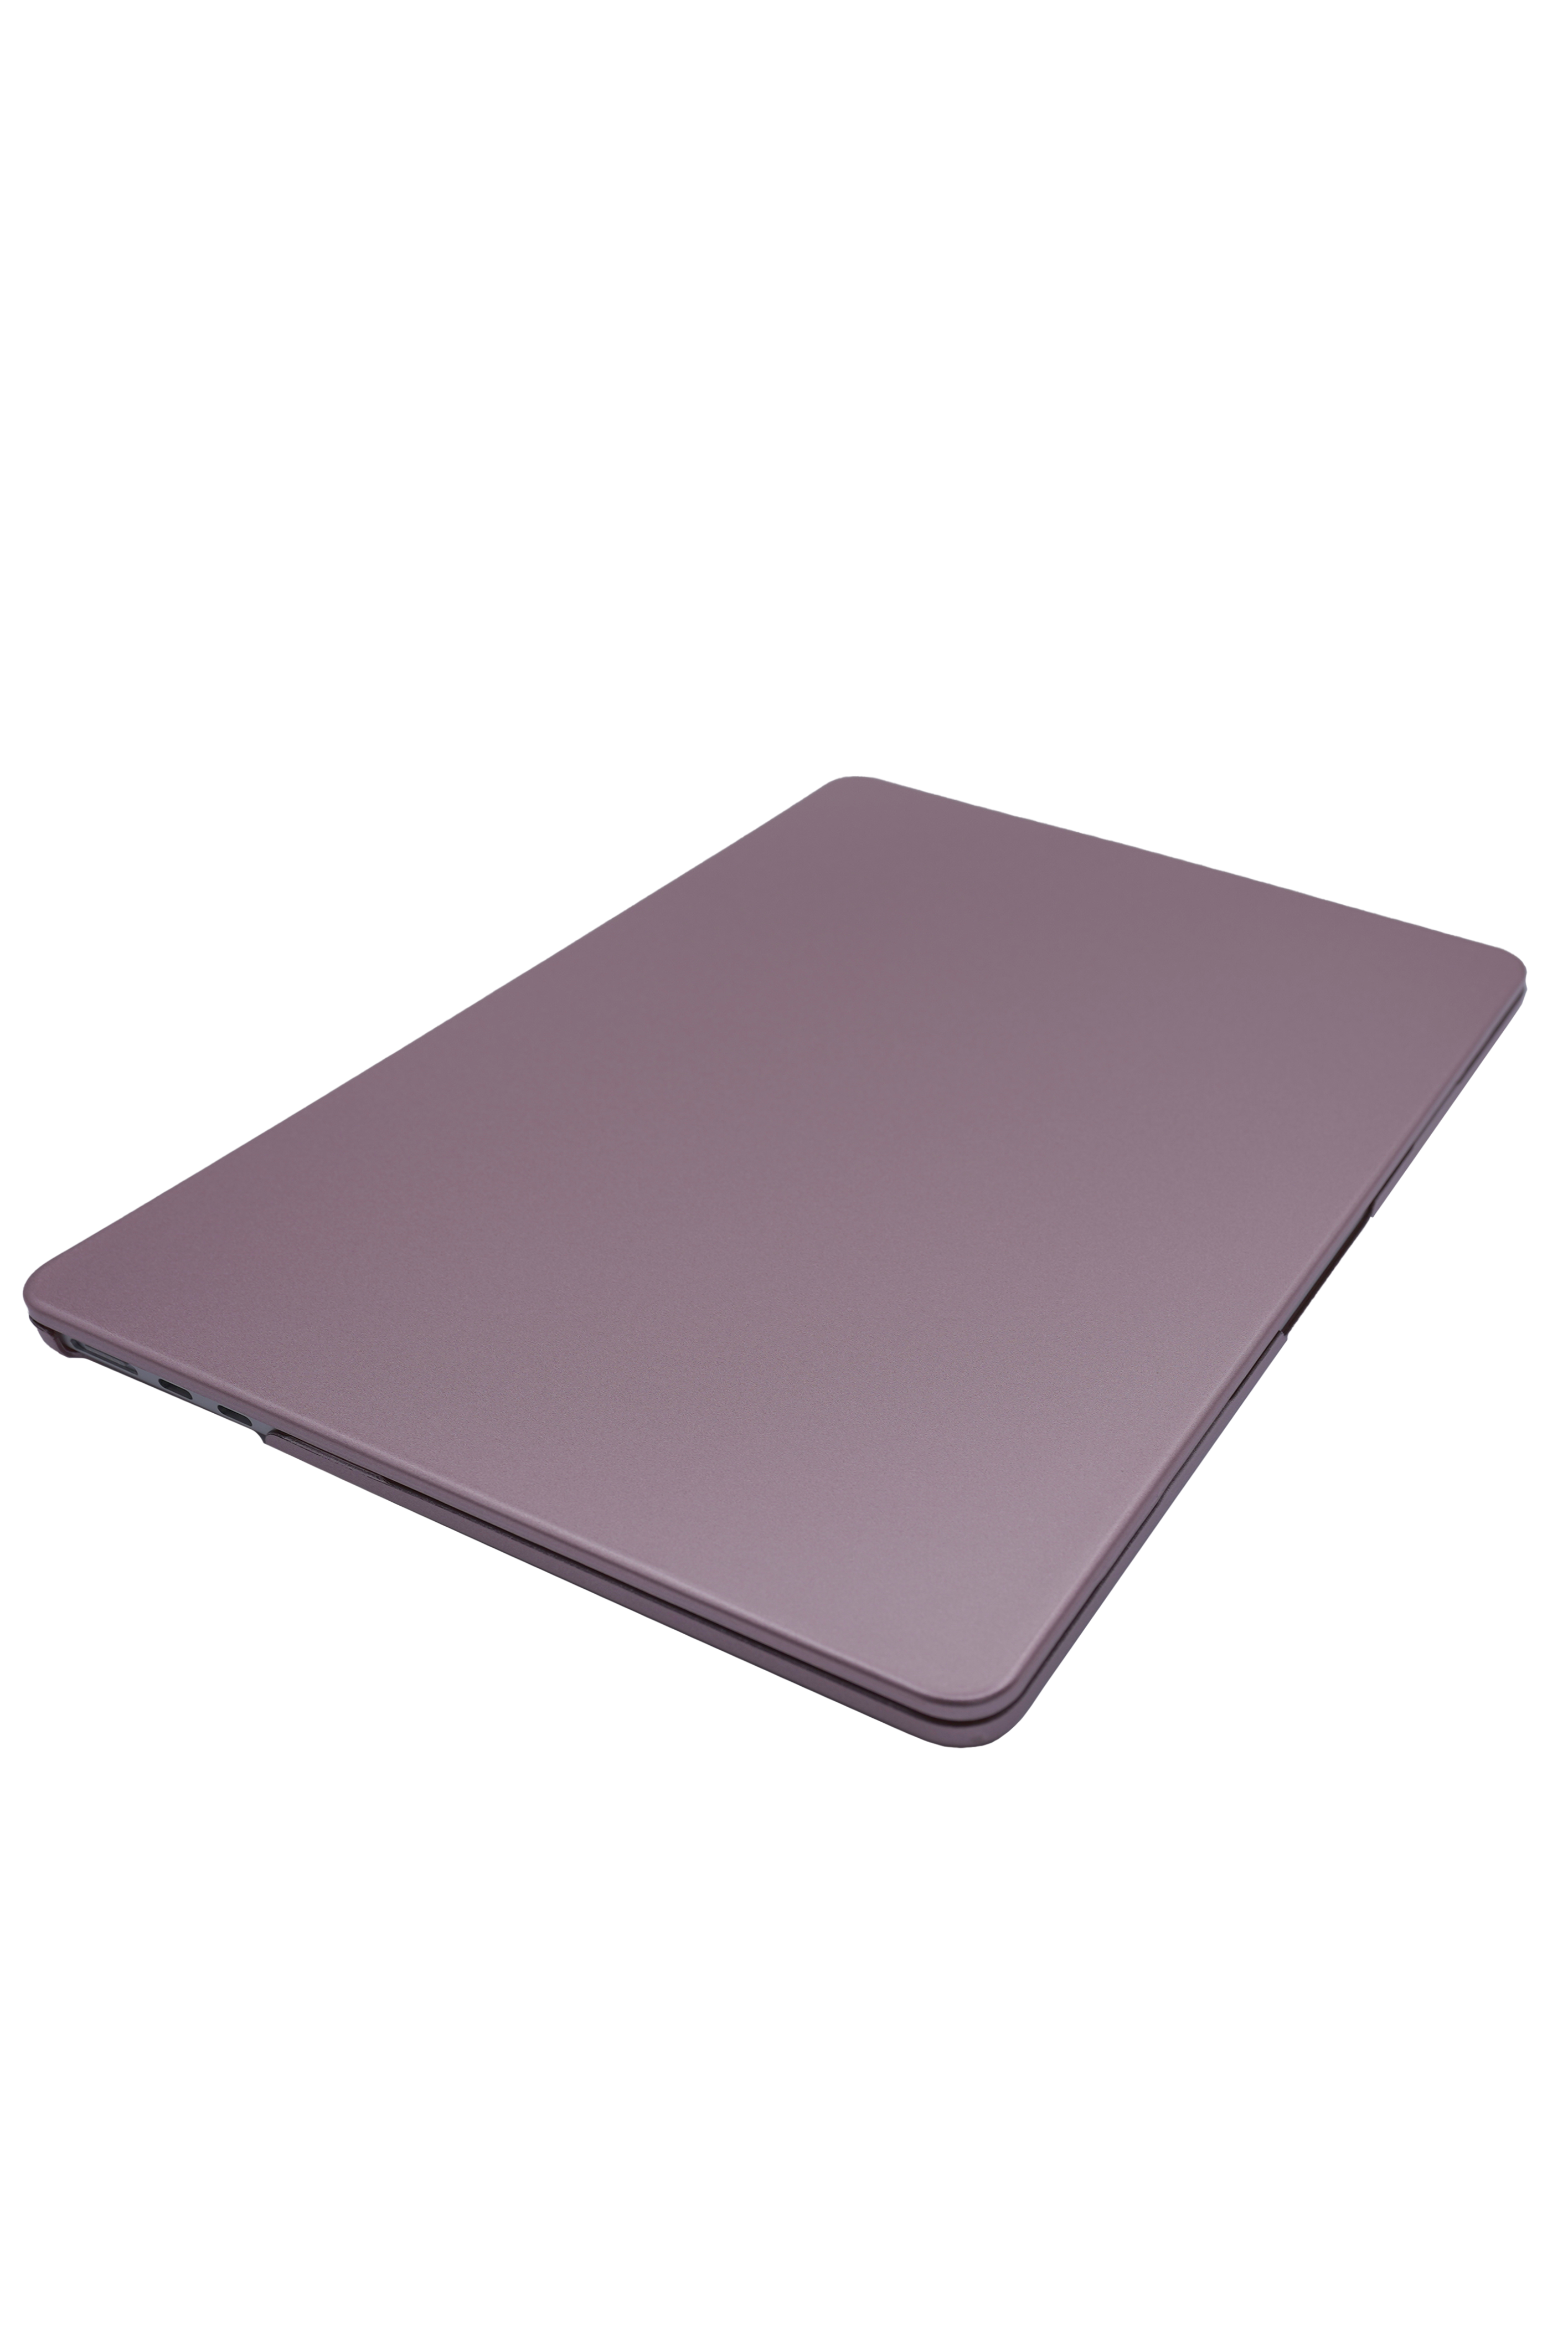 Чехол DDC Metal Case на MacBook Pro 13 A1278 Розовое золото